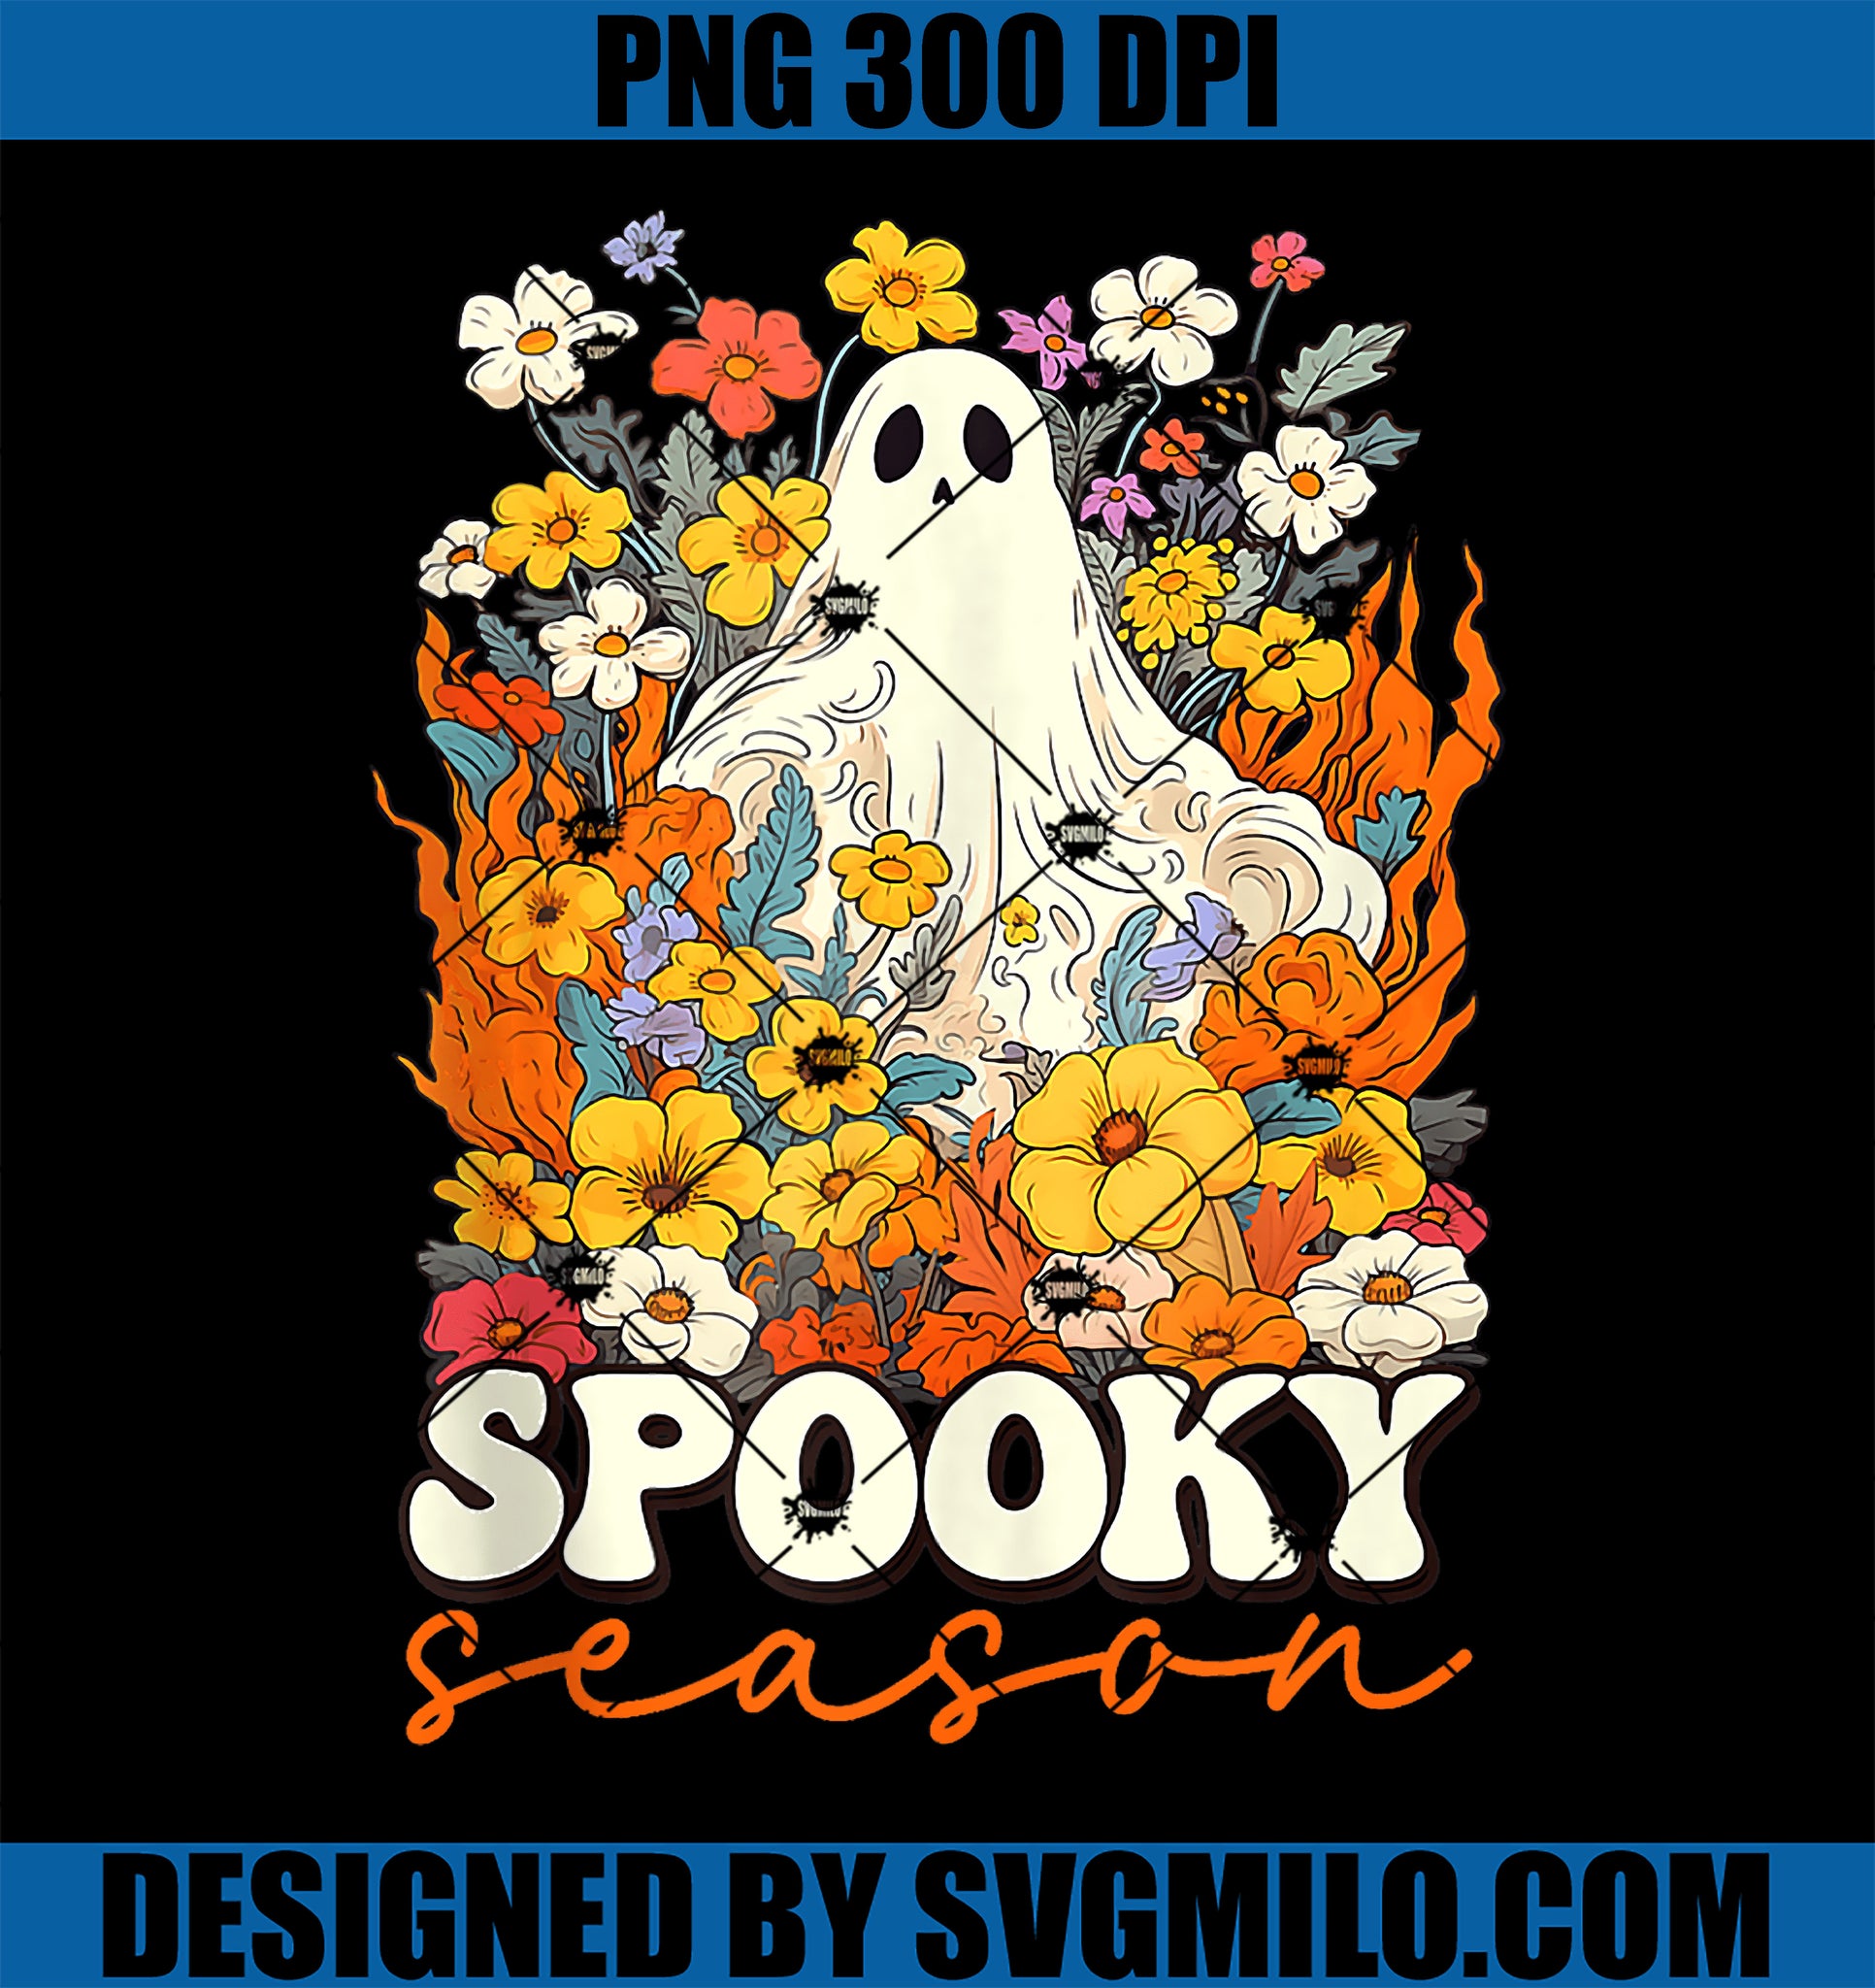 Retro Spooky Season PNG, Floral Cute Ghost Halloween PNG, Groovy Spooky Season PNG